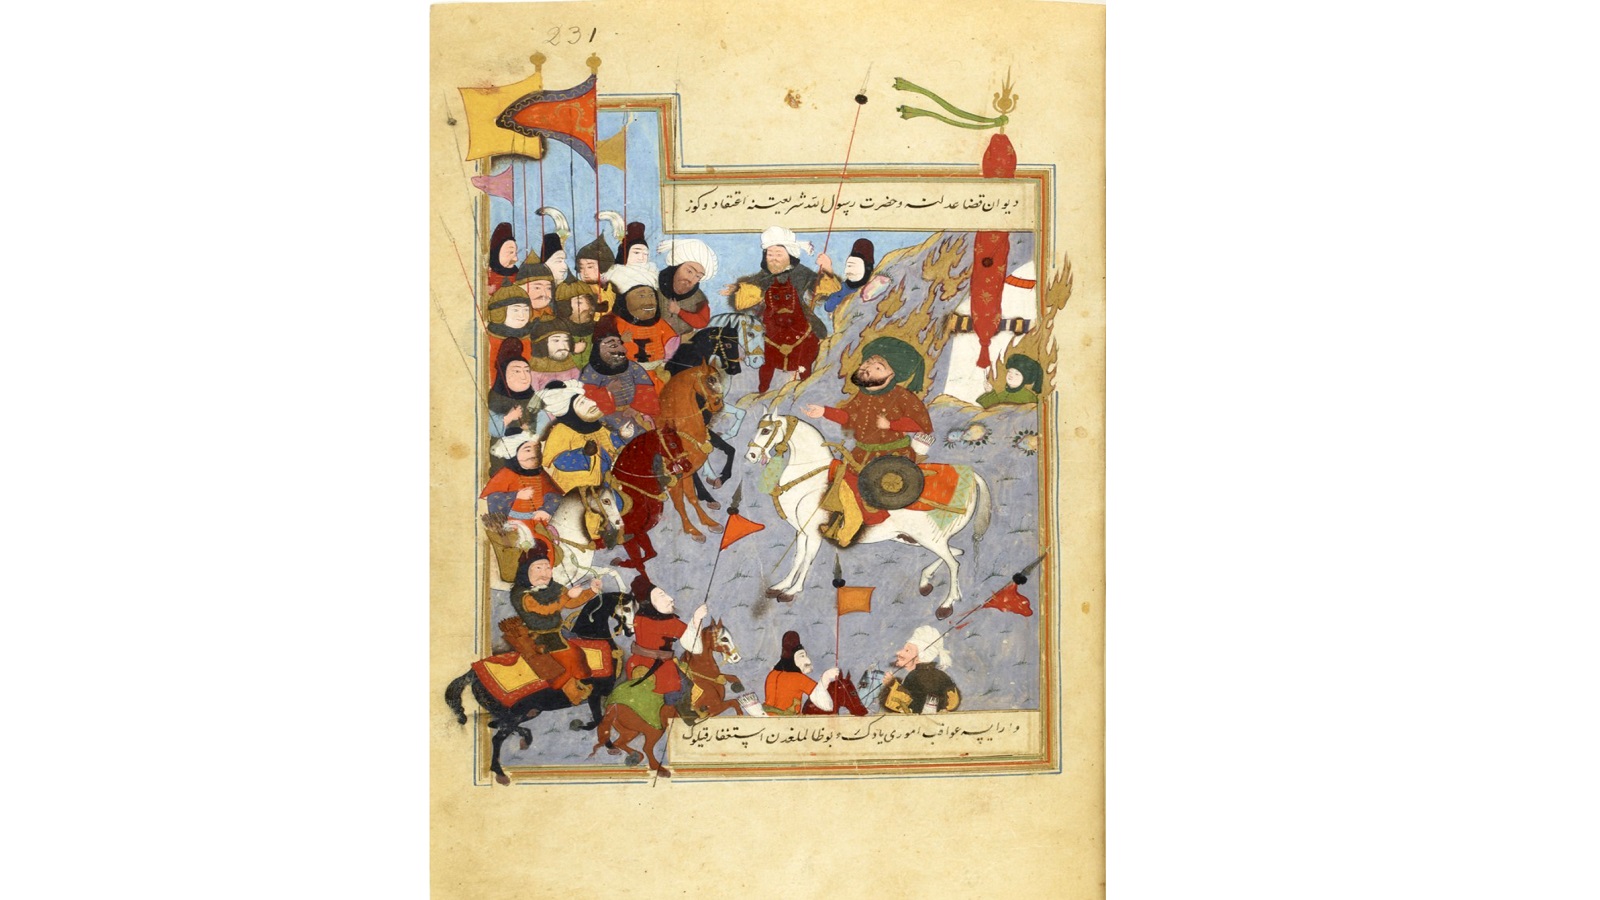 الحسين وسط المعركة في كربلاء، حديقة السعداء، القرن 17، محفوظات المكتبة الوطنية الفرنسية، باريس.